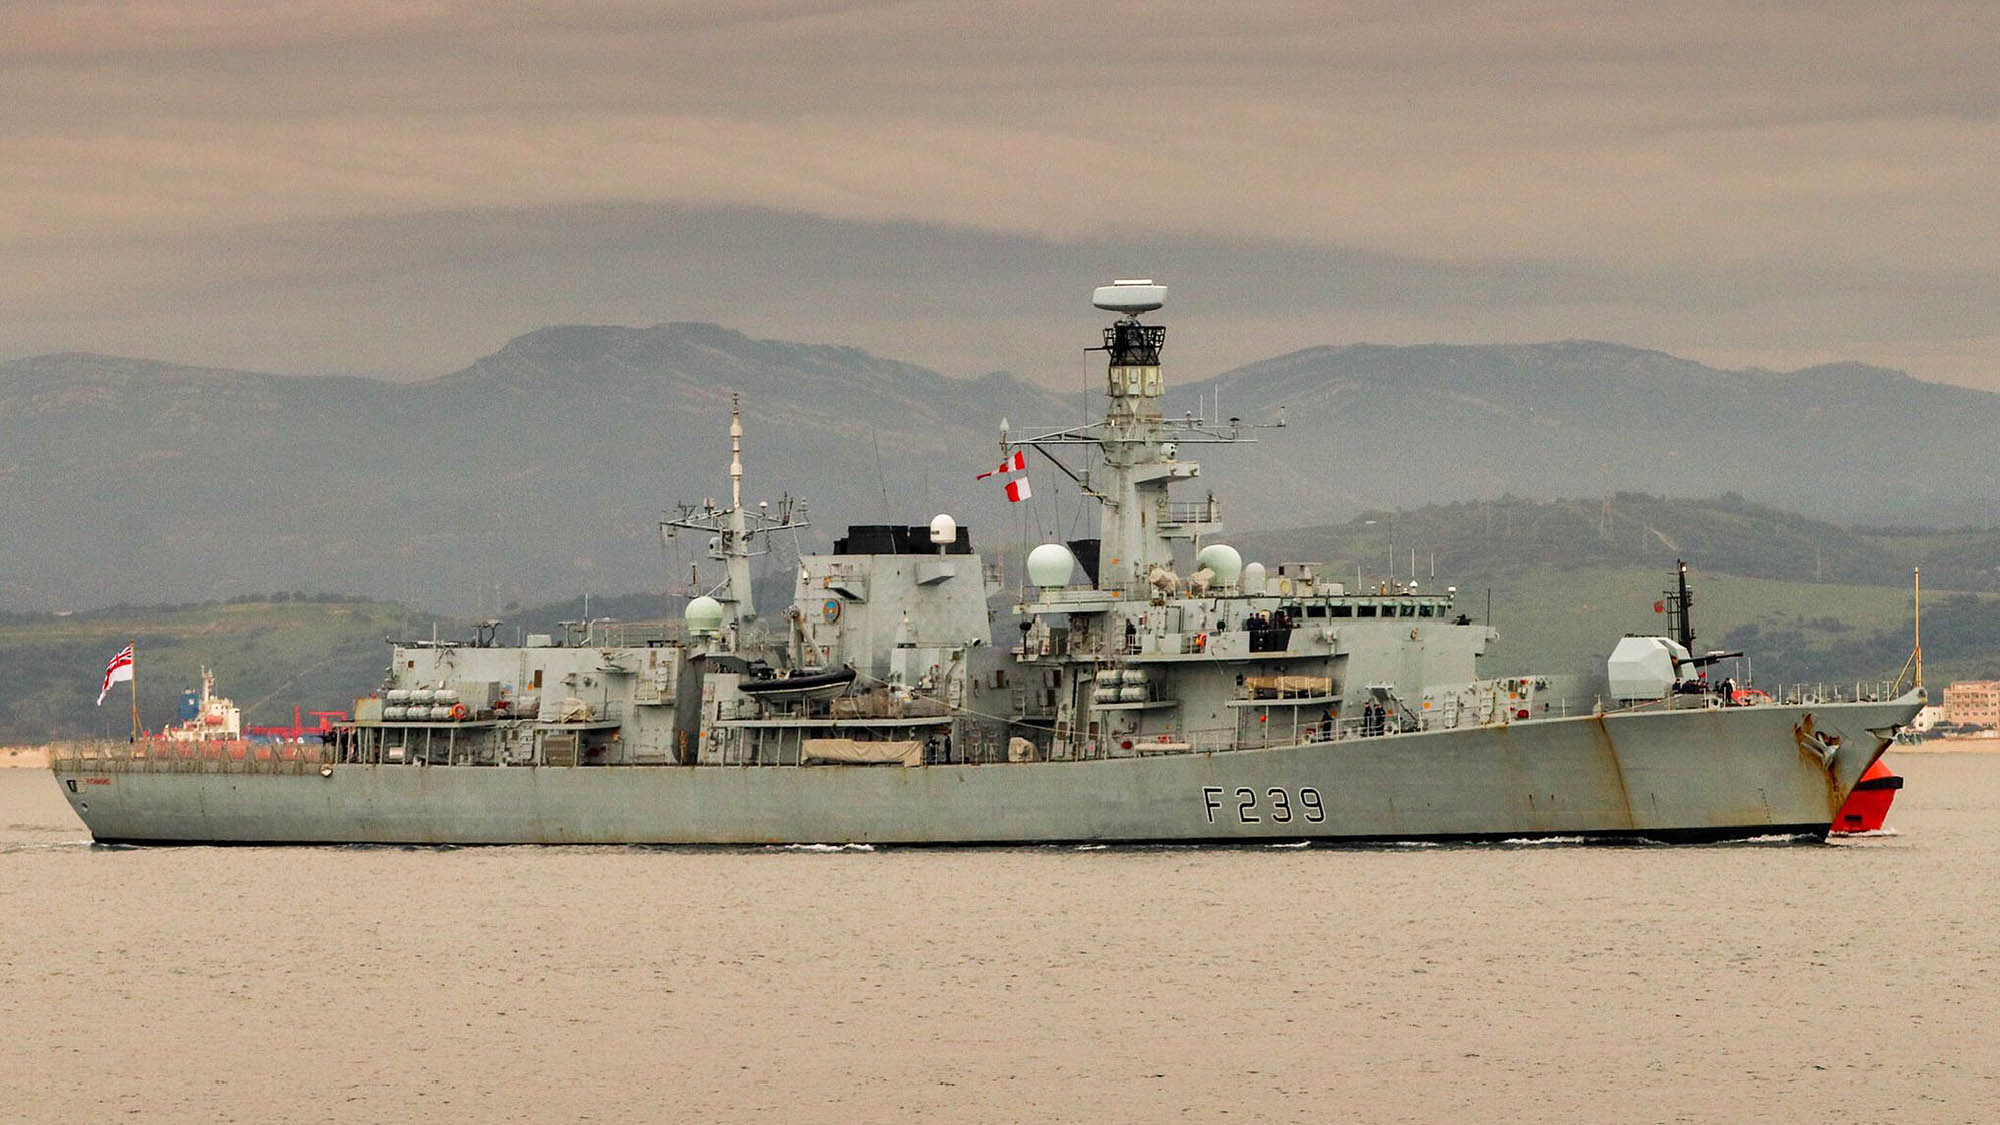 Μια επιπλέον Type 23 στέλνει το βρετανικό Ναυτικό στην Ερυθρά θάλασσα